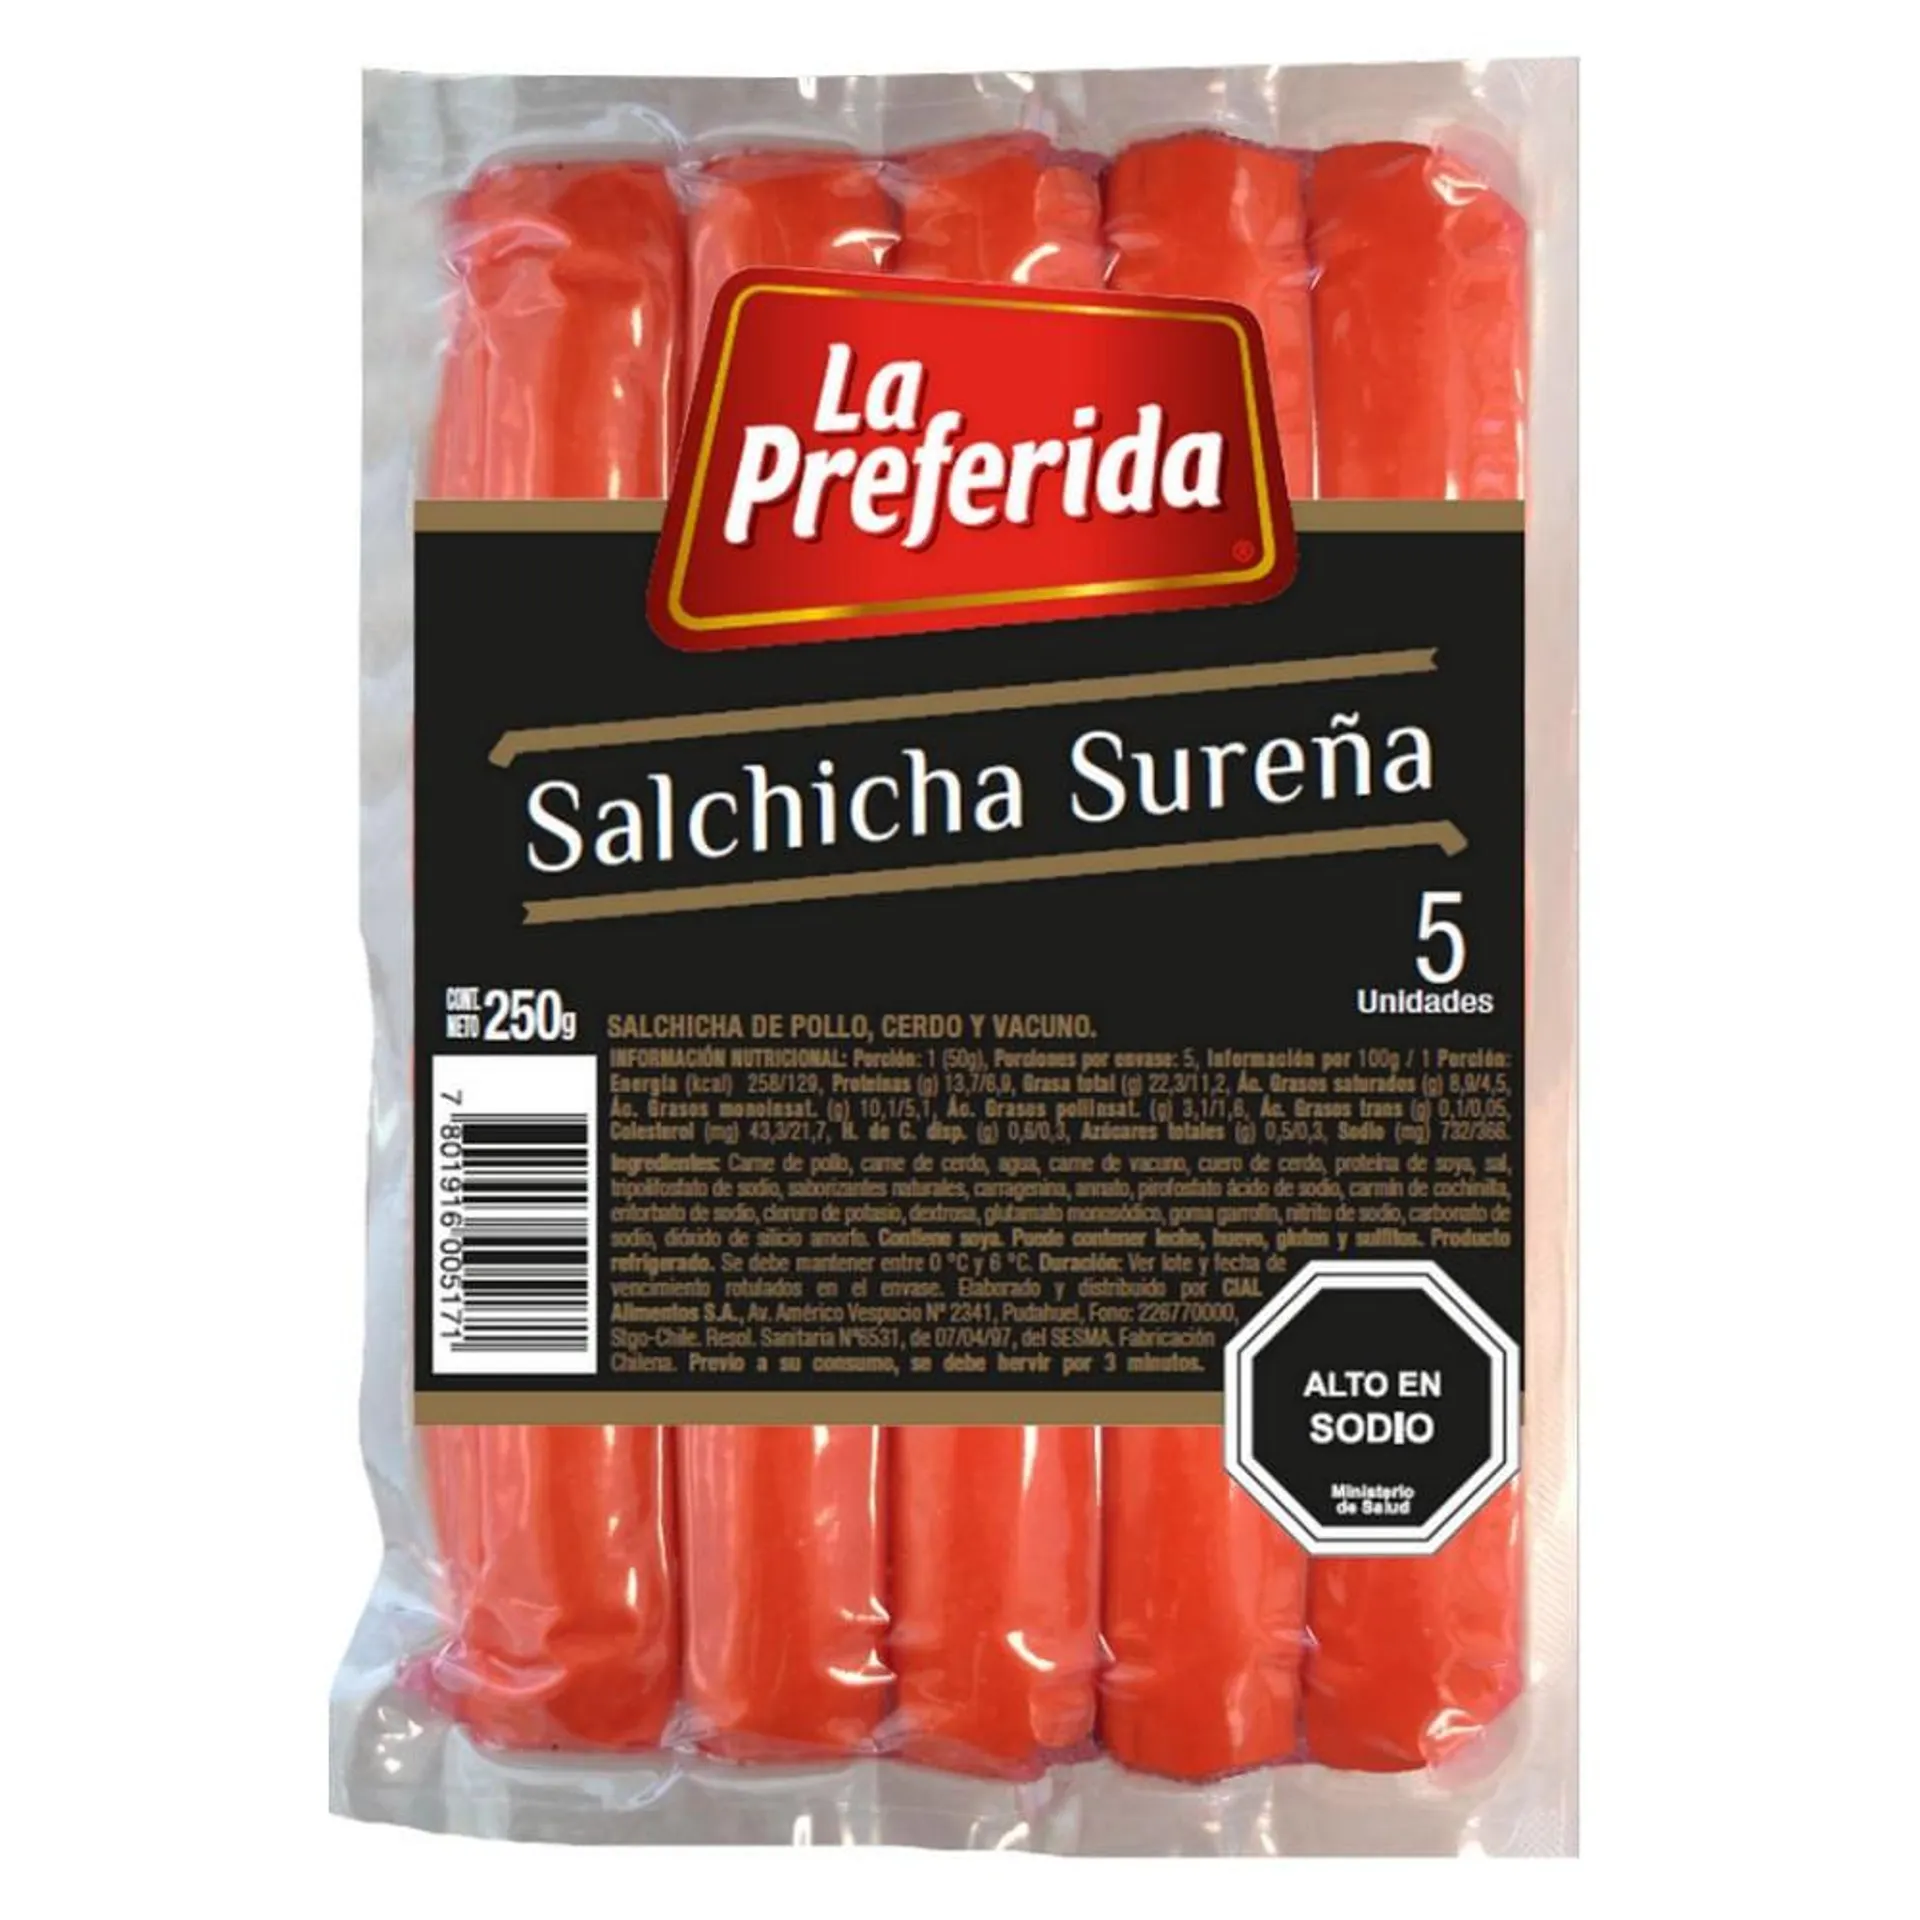 Salchicha sureña La Preferida 5 un 250 g